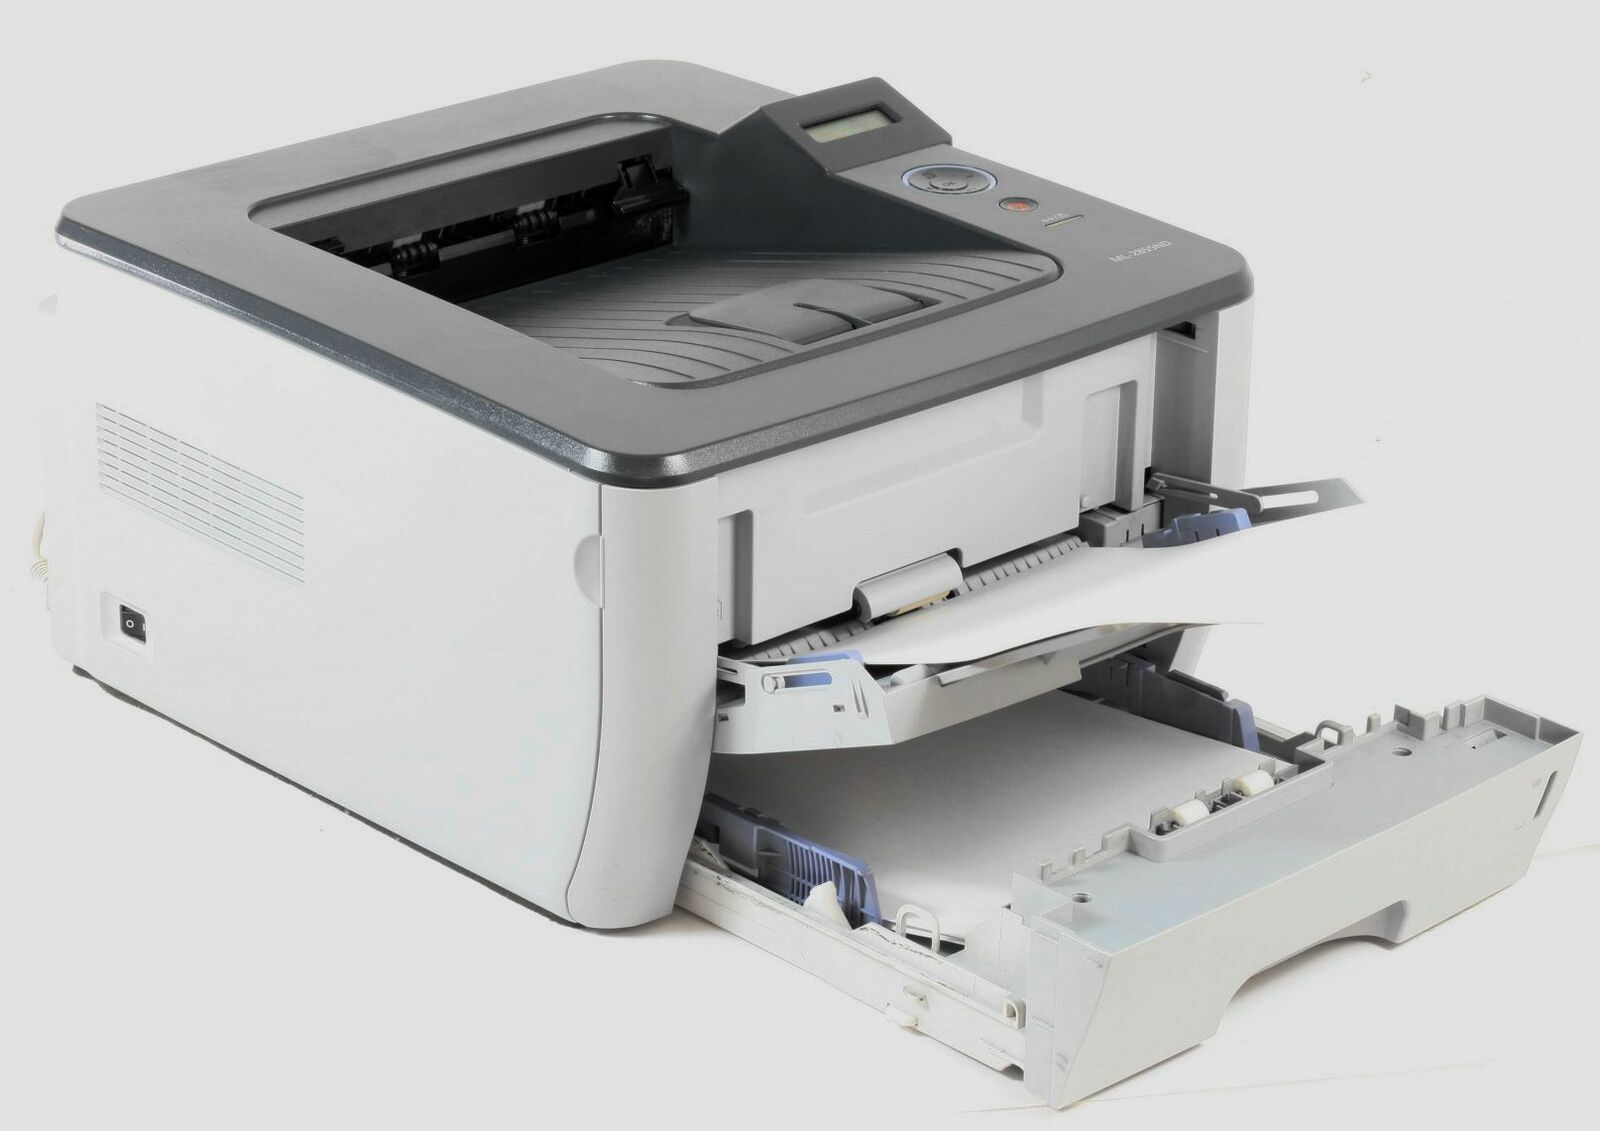 Samsung ML-2855ND Monochrom-Laserdrucker S/W A4 1200 x 1200 DPI 28 Seiten pro Minute Netzwerkduplex Automatischer Duplexdruck